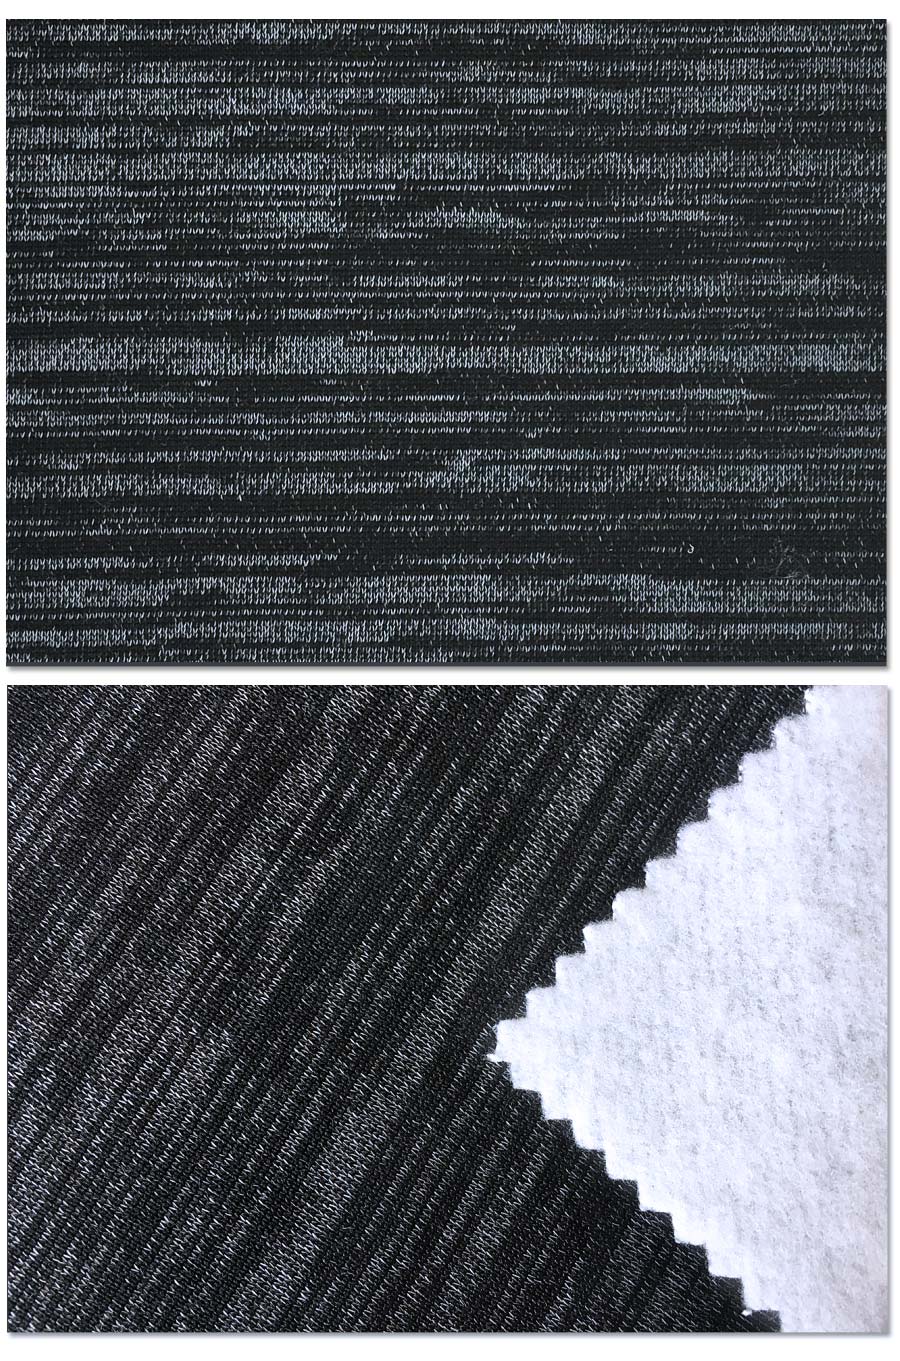 Indwangu ye-CVC ebhulashiwe engu-60% kakotini engu-40% ye-Polyester Fleece Fabric